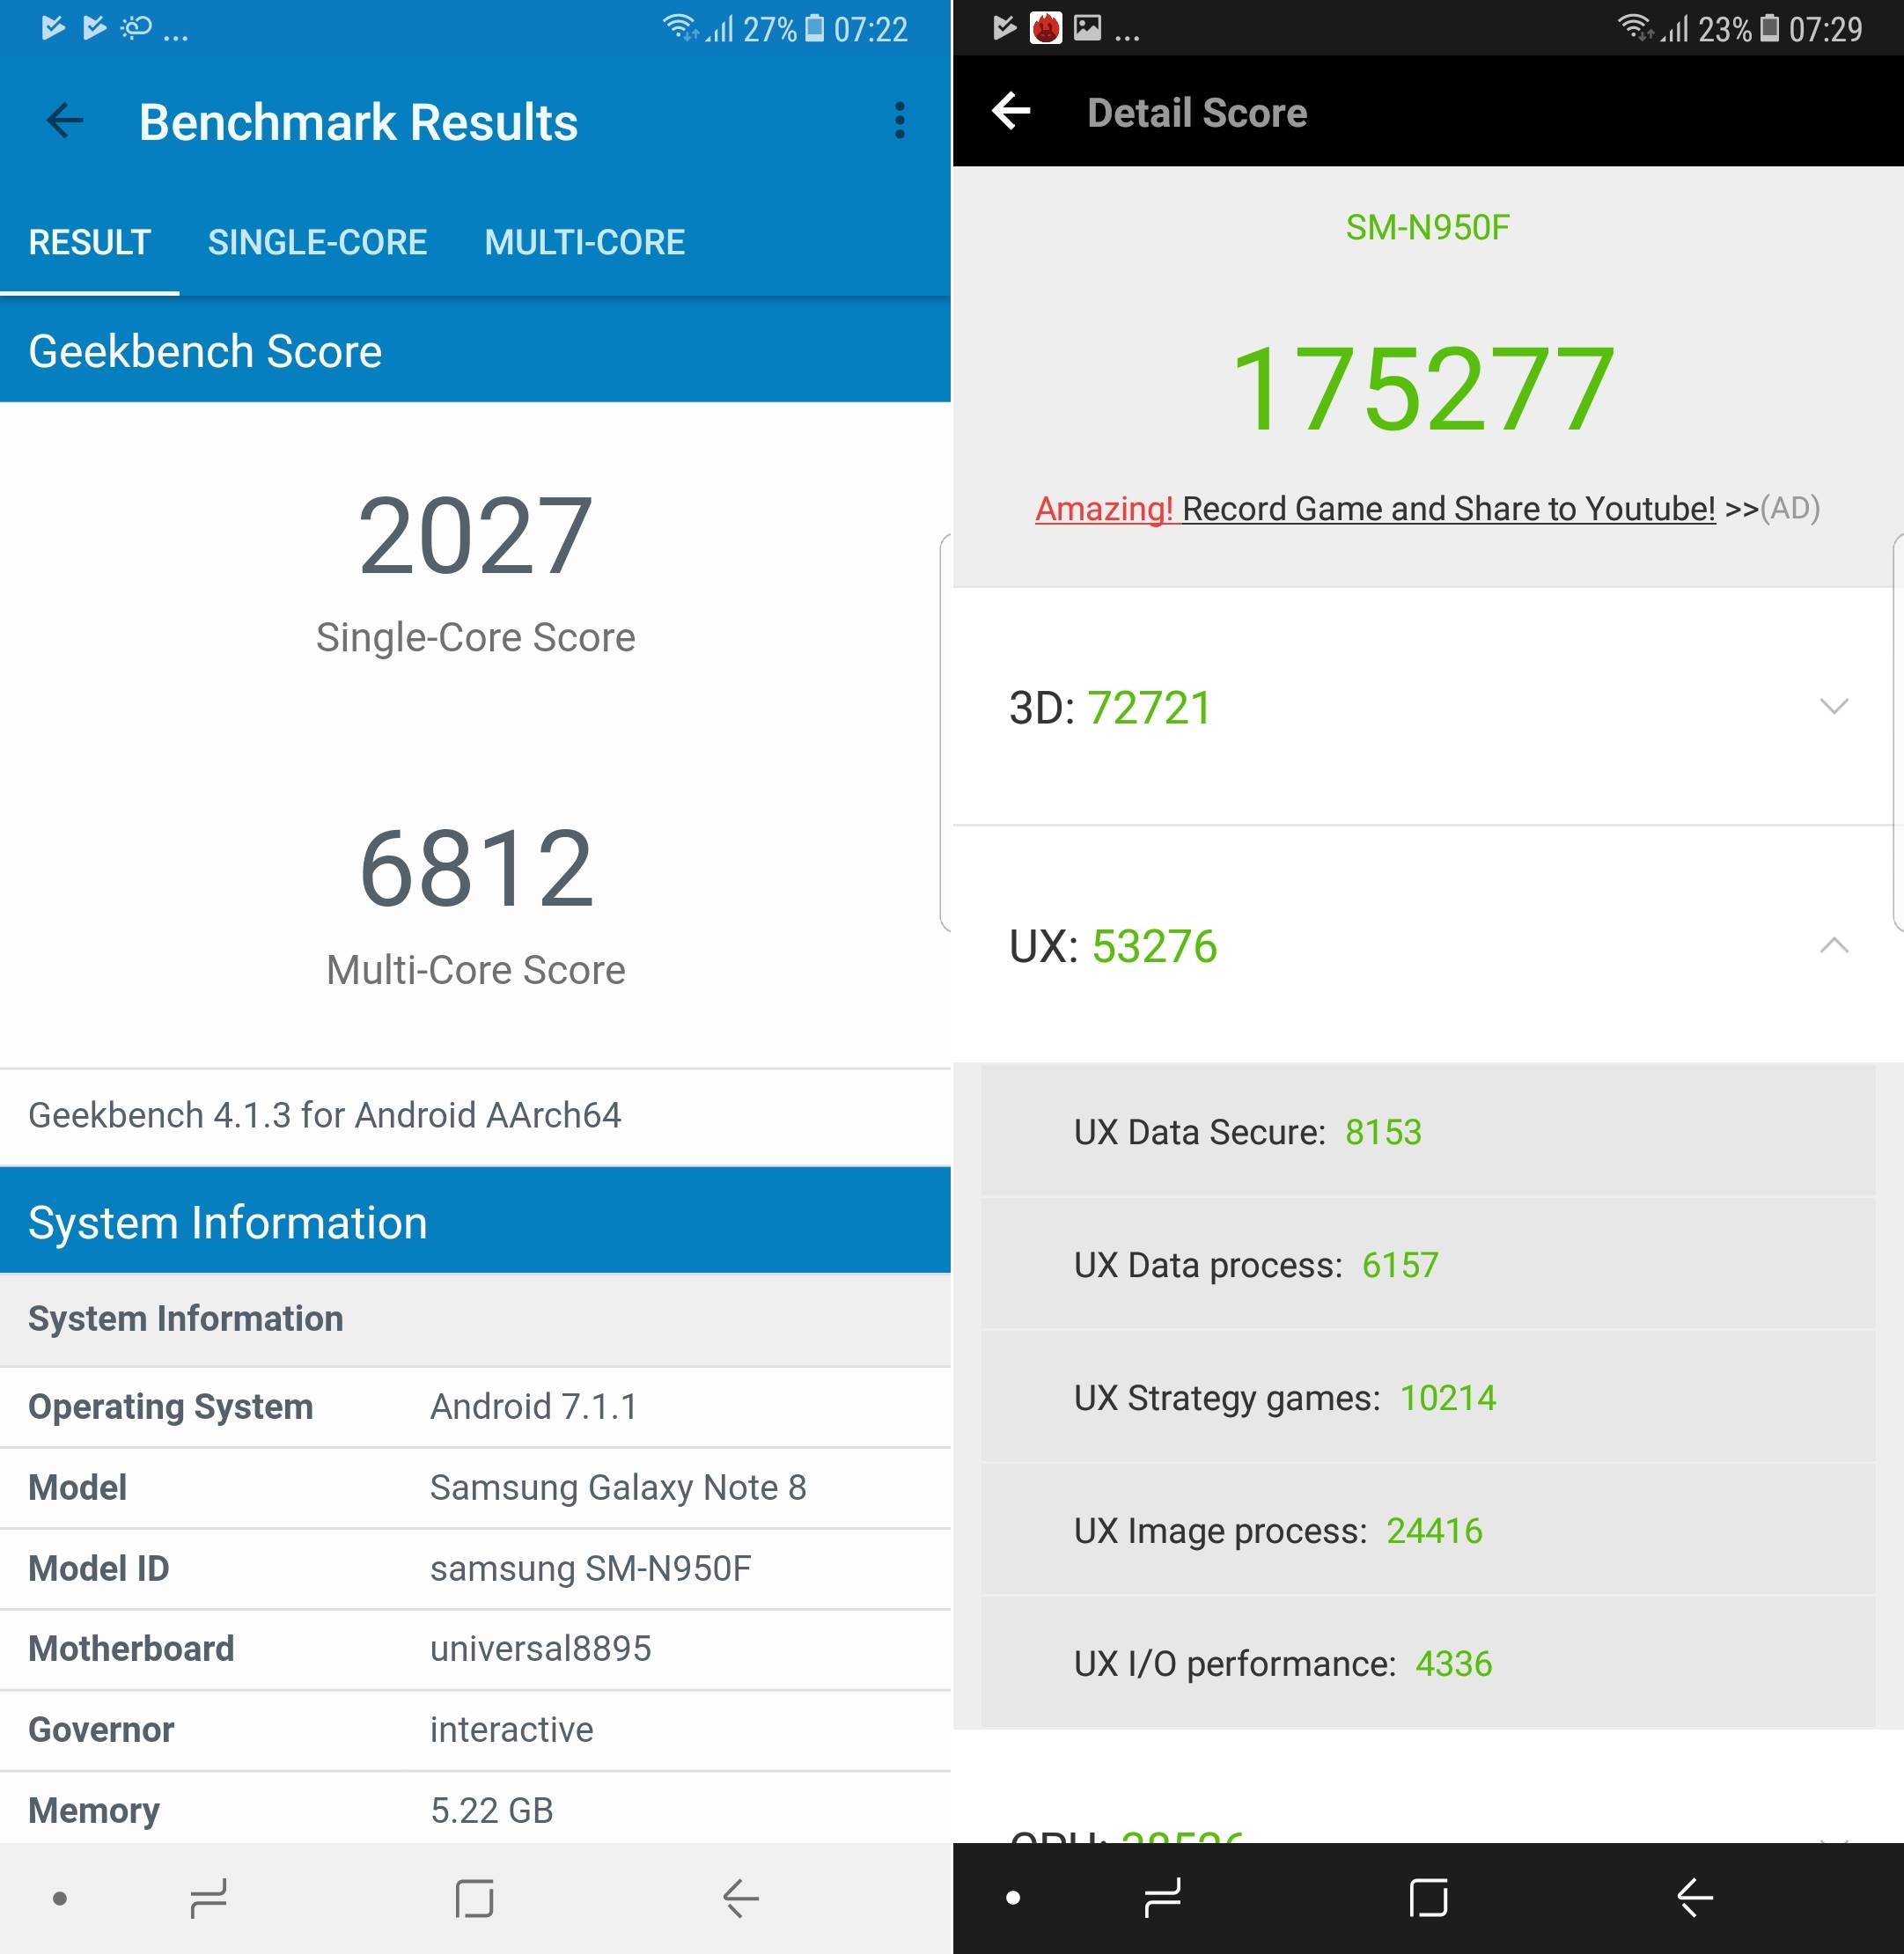 Impressioni sulle prestazioni del Samsung Galaxy Note 8